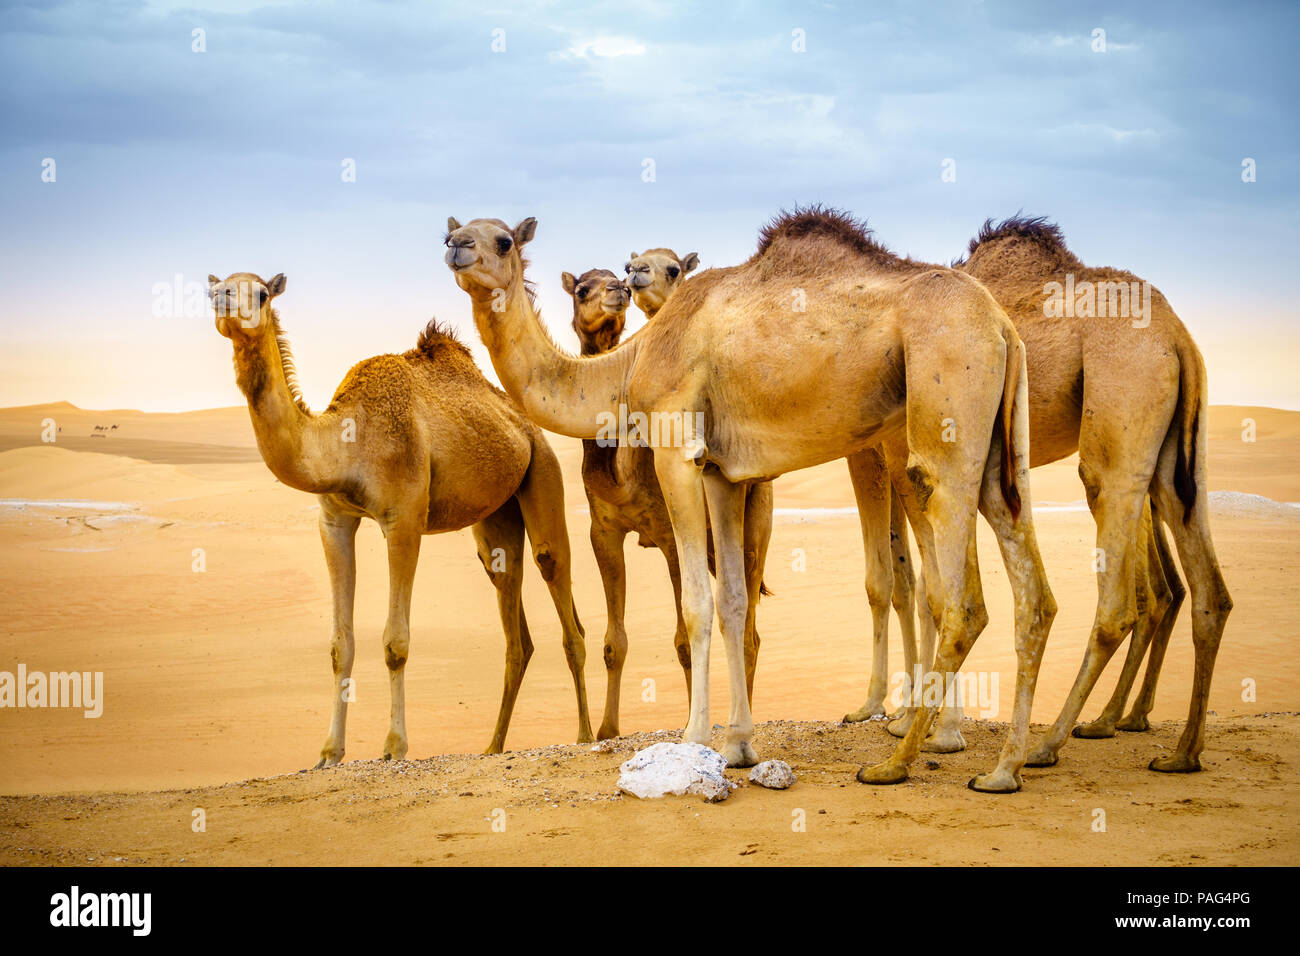 Una manada de camellos silvestres en el desierto cerca de Al Ain, Emiratos Árabes Unidos Foto de stock